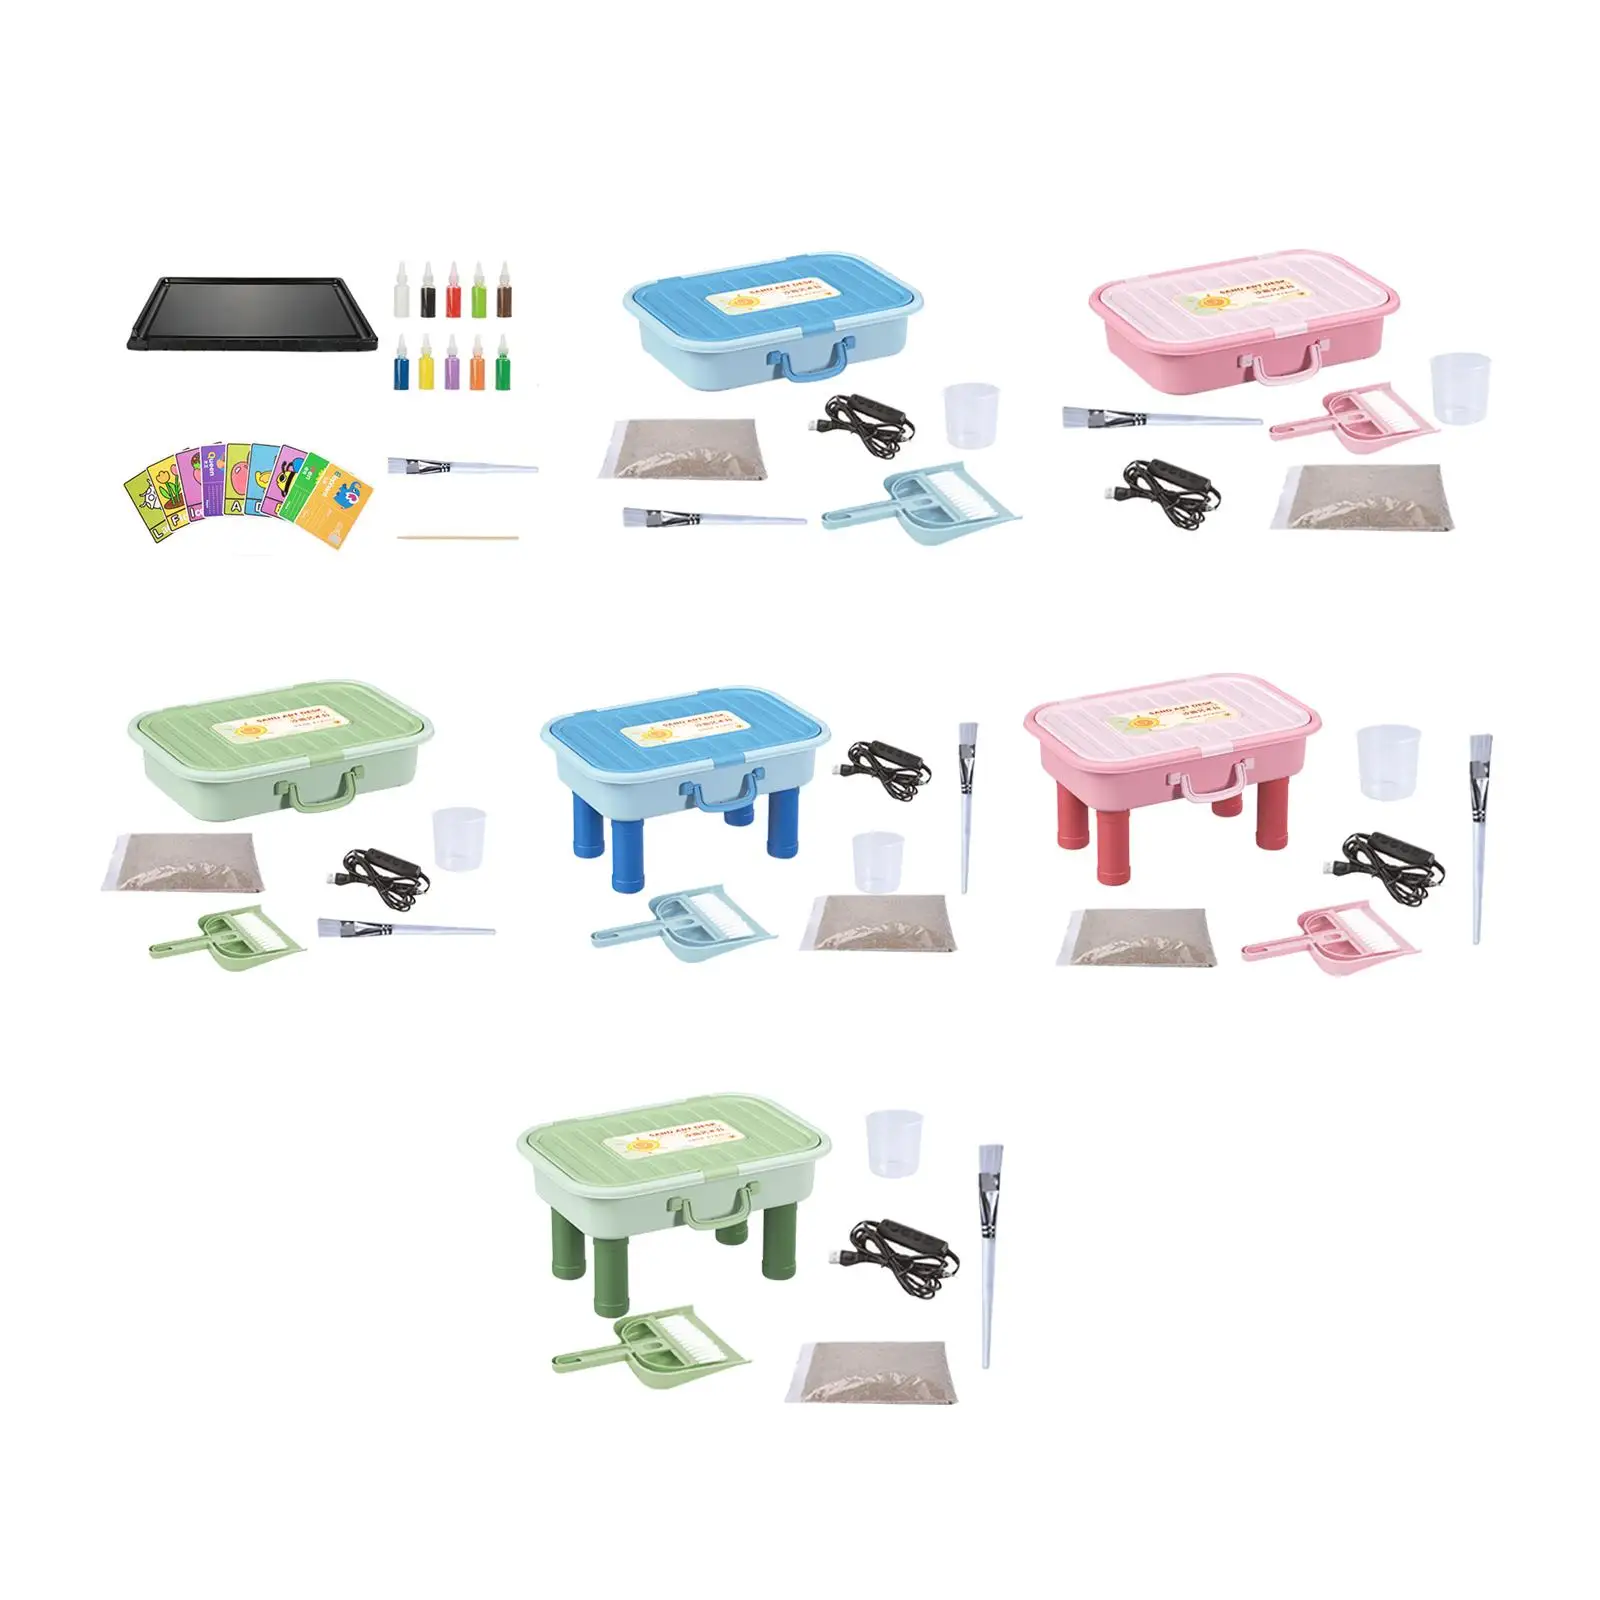 Light Sensory Sands Box Table Sand Art Supplies Sandbox for Preschool Toddler